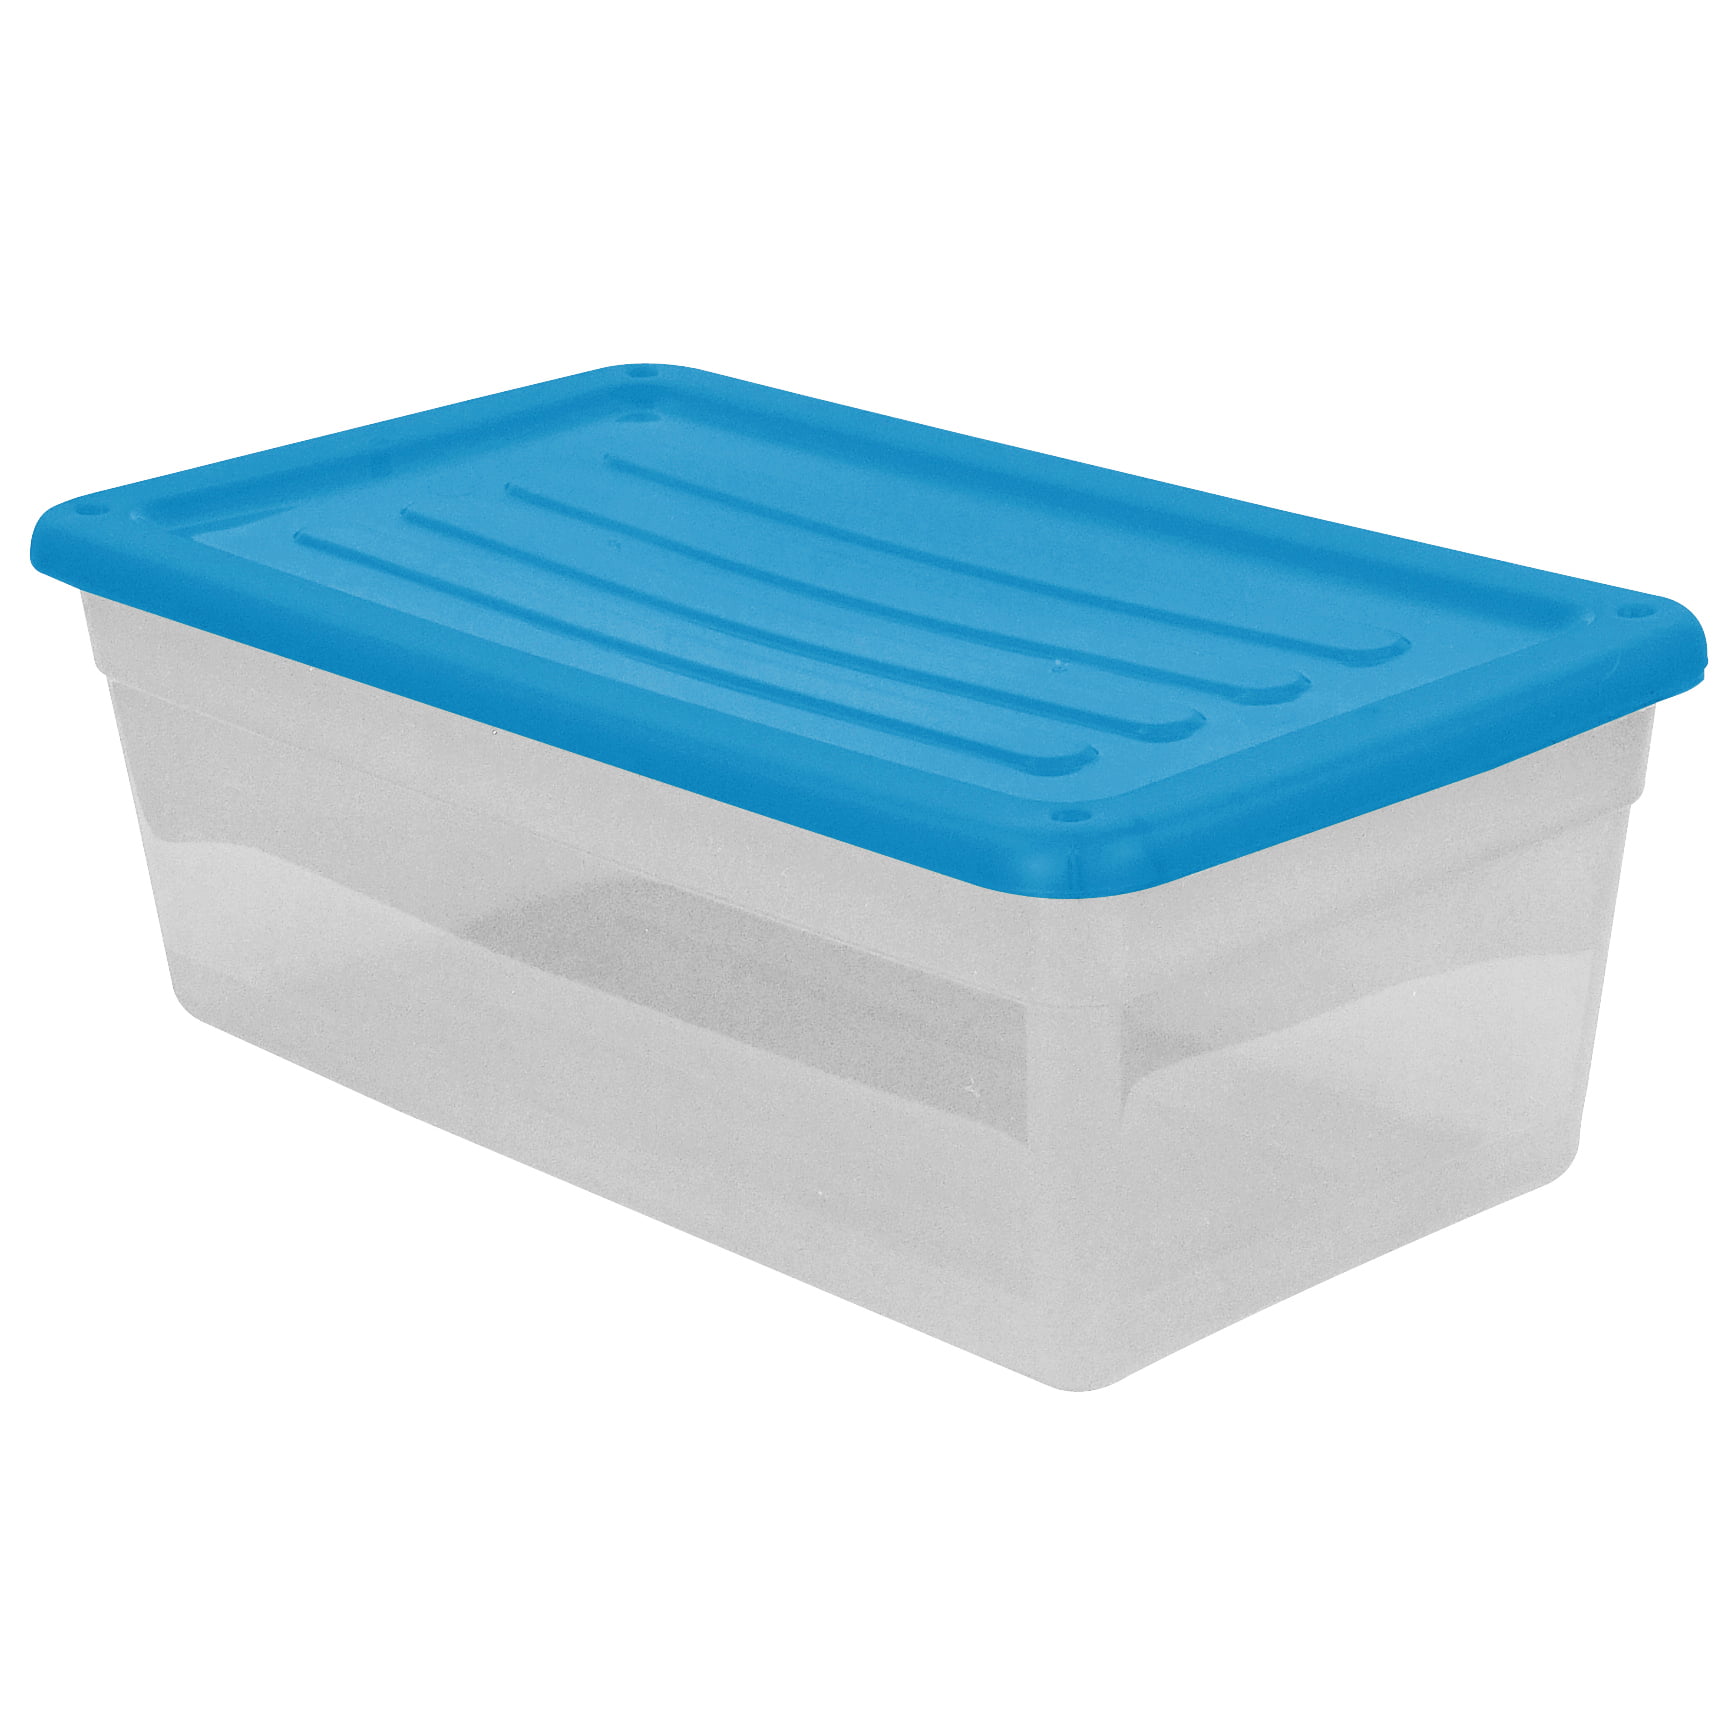 Gracious Living DLC6 6 Qt Shoebox Clear Plastic Storage Bin Container w Blue Lid